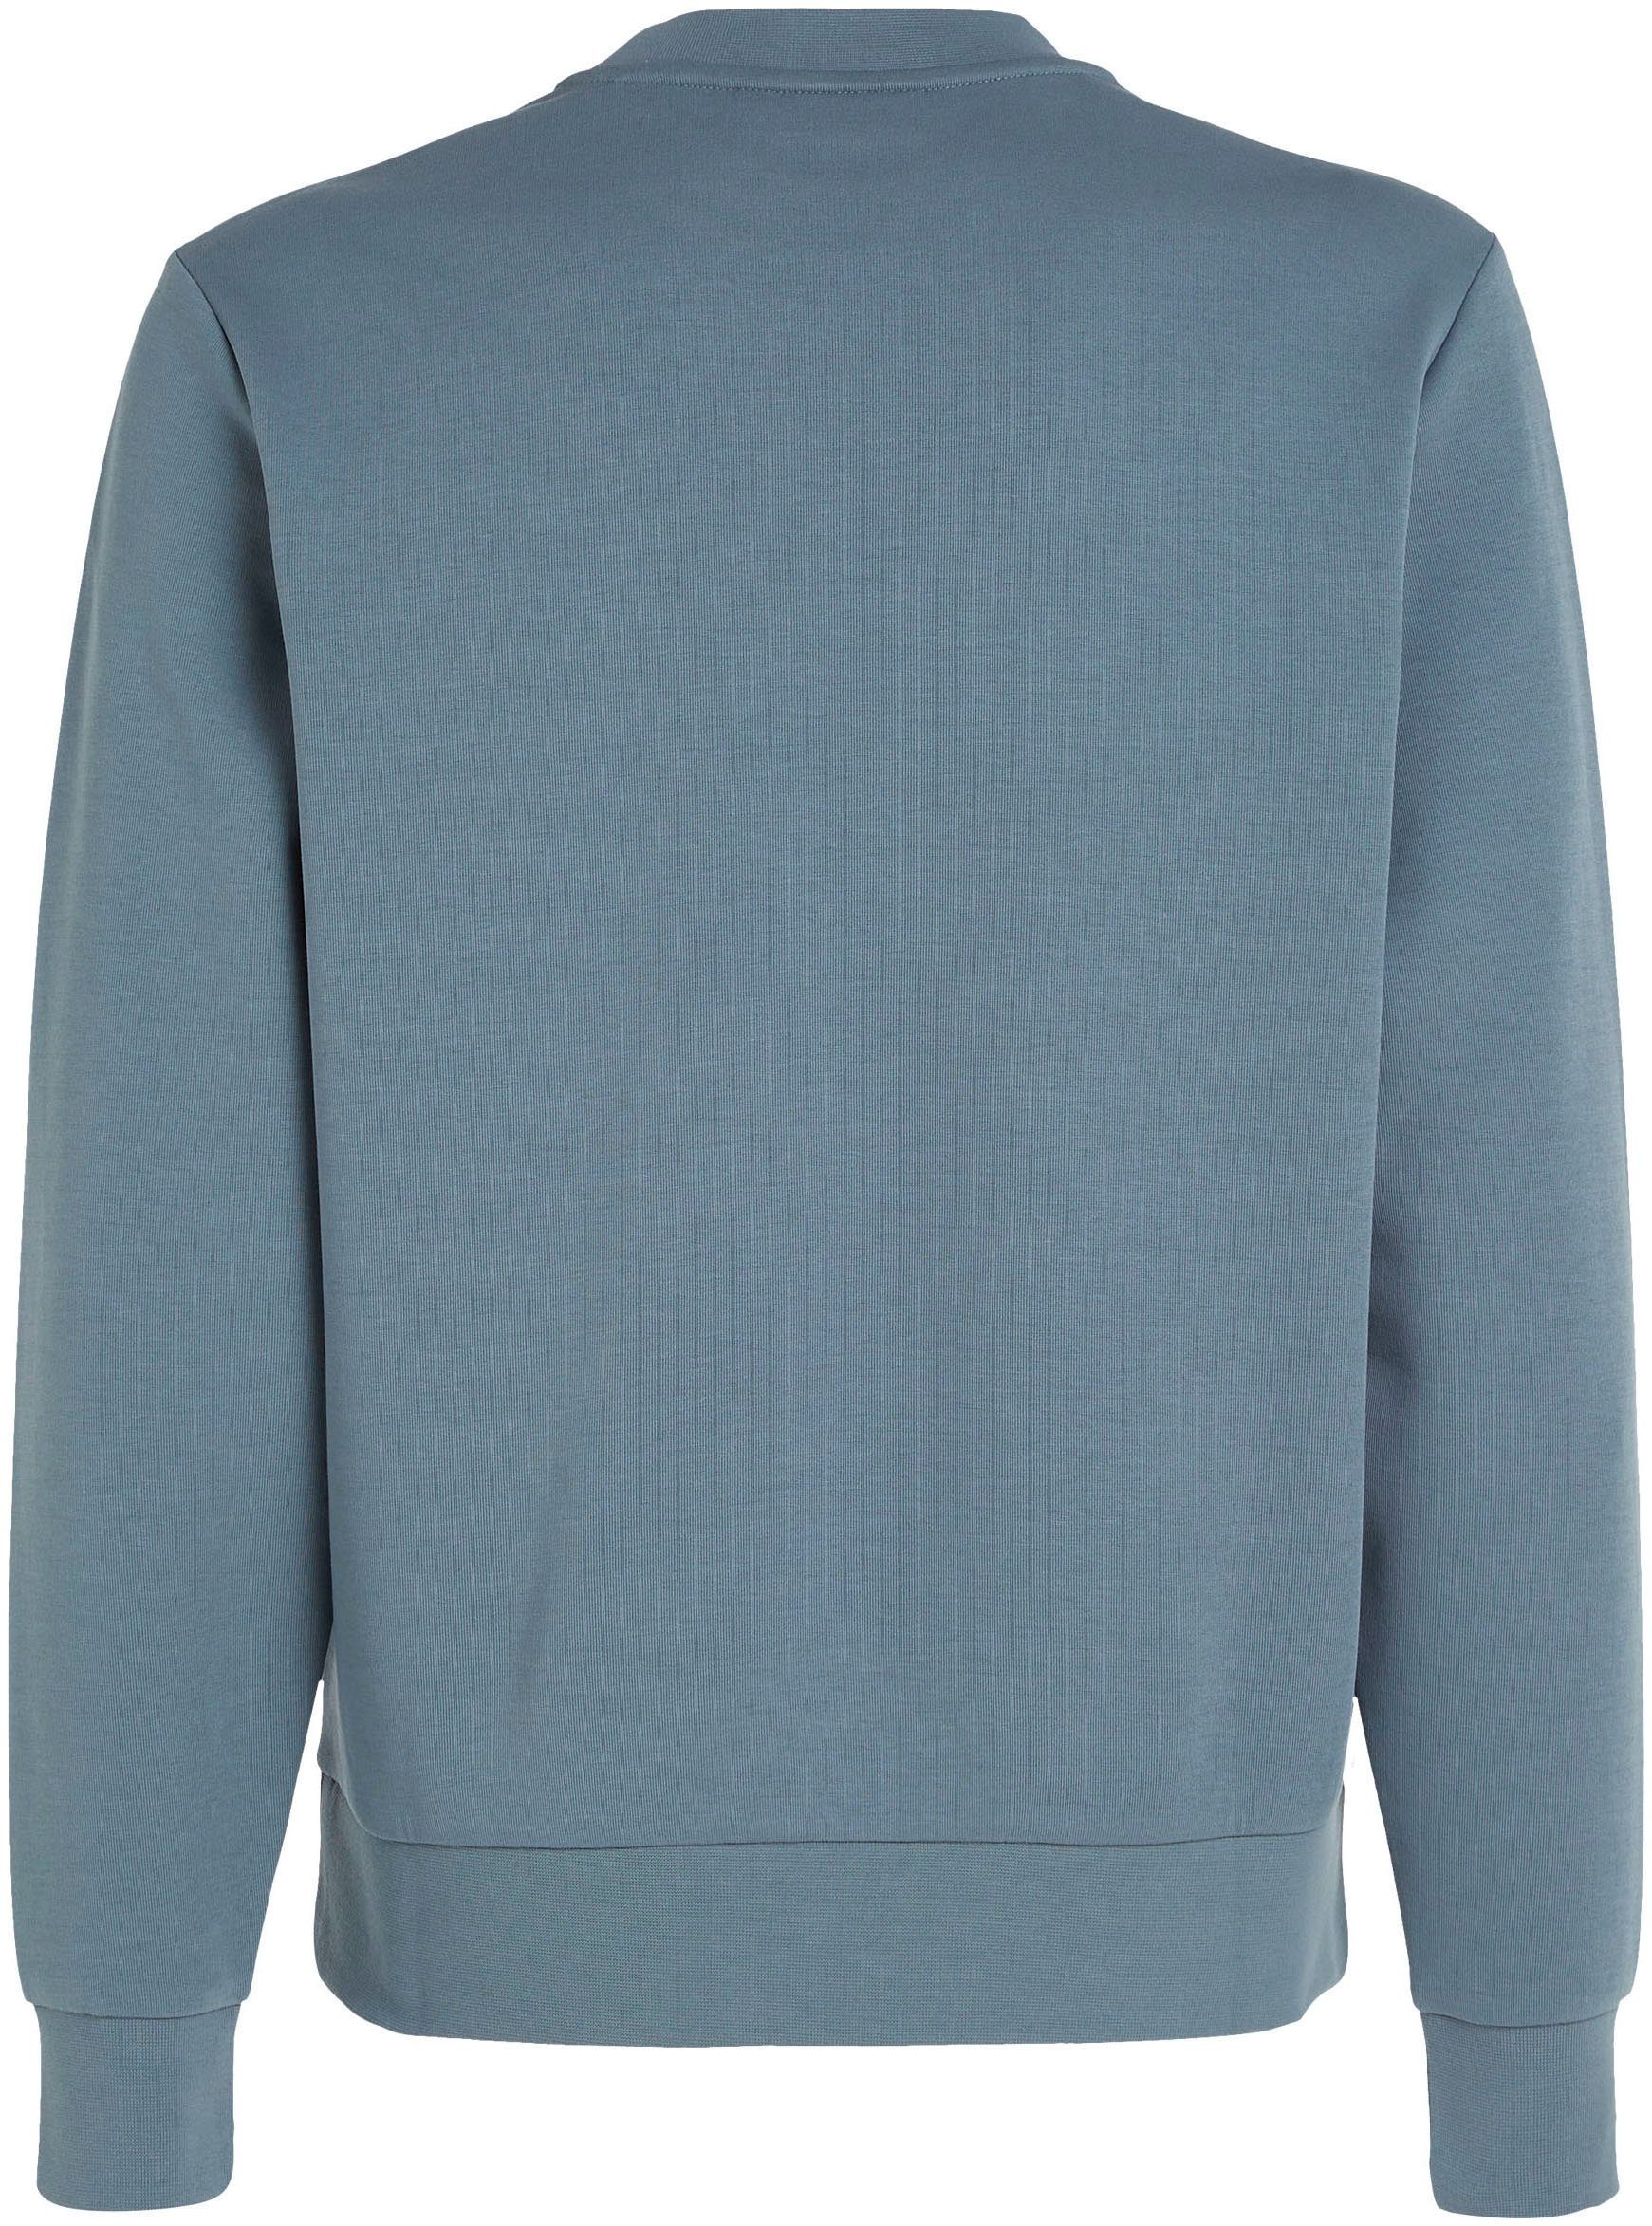 MICRO Sweatshirt Grey Klein Calvin halsnahmen Tar mit LOGO Rundhalsausschnitt SWEATSHIRT REPREVE